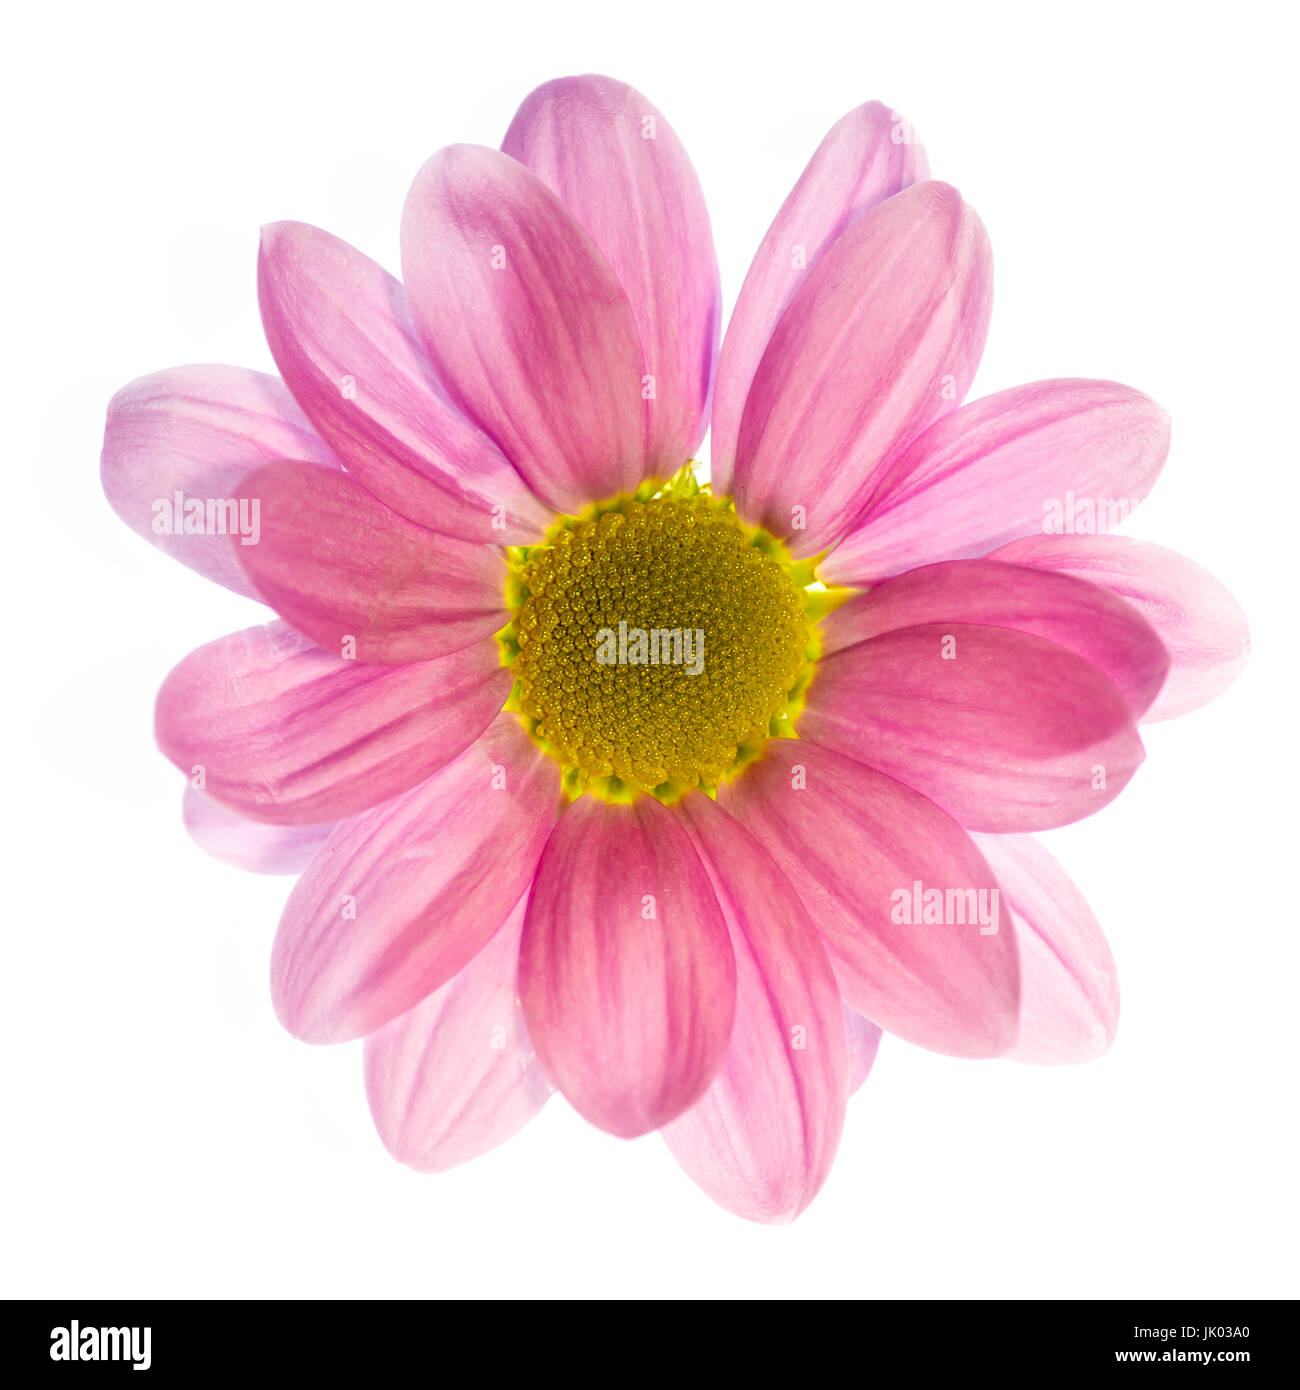 Fotografia artistica di un unico fiore dahlia isolato su uno sfondo bianco Foto Stock